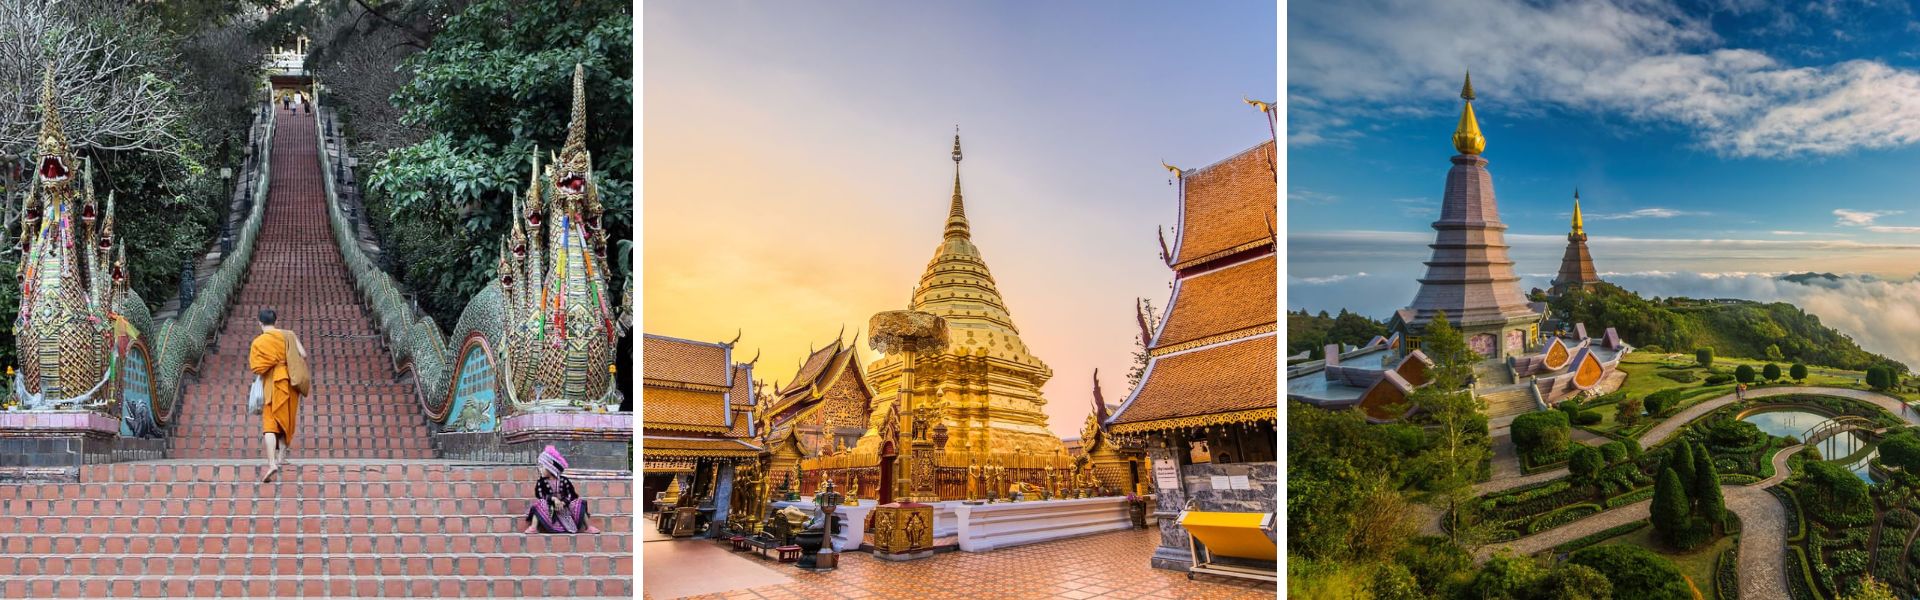 Chiang Mai Sehenswürdigkeiten und Aktivitäten  |Thailand Reisen